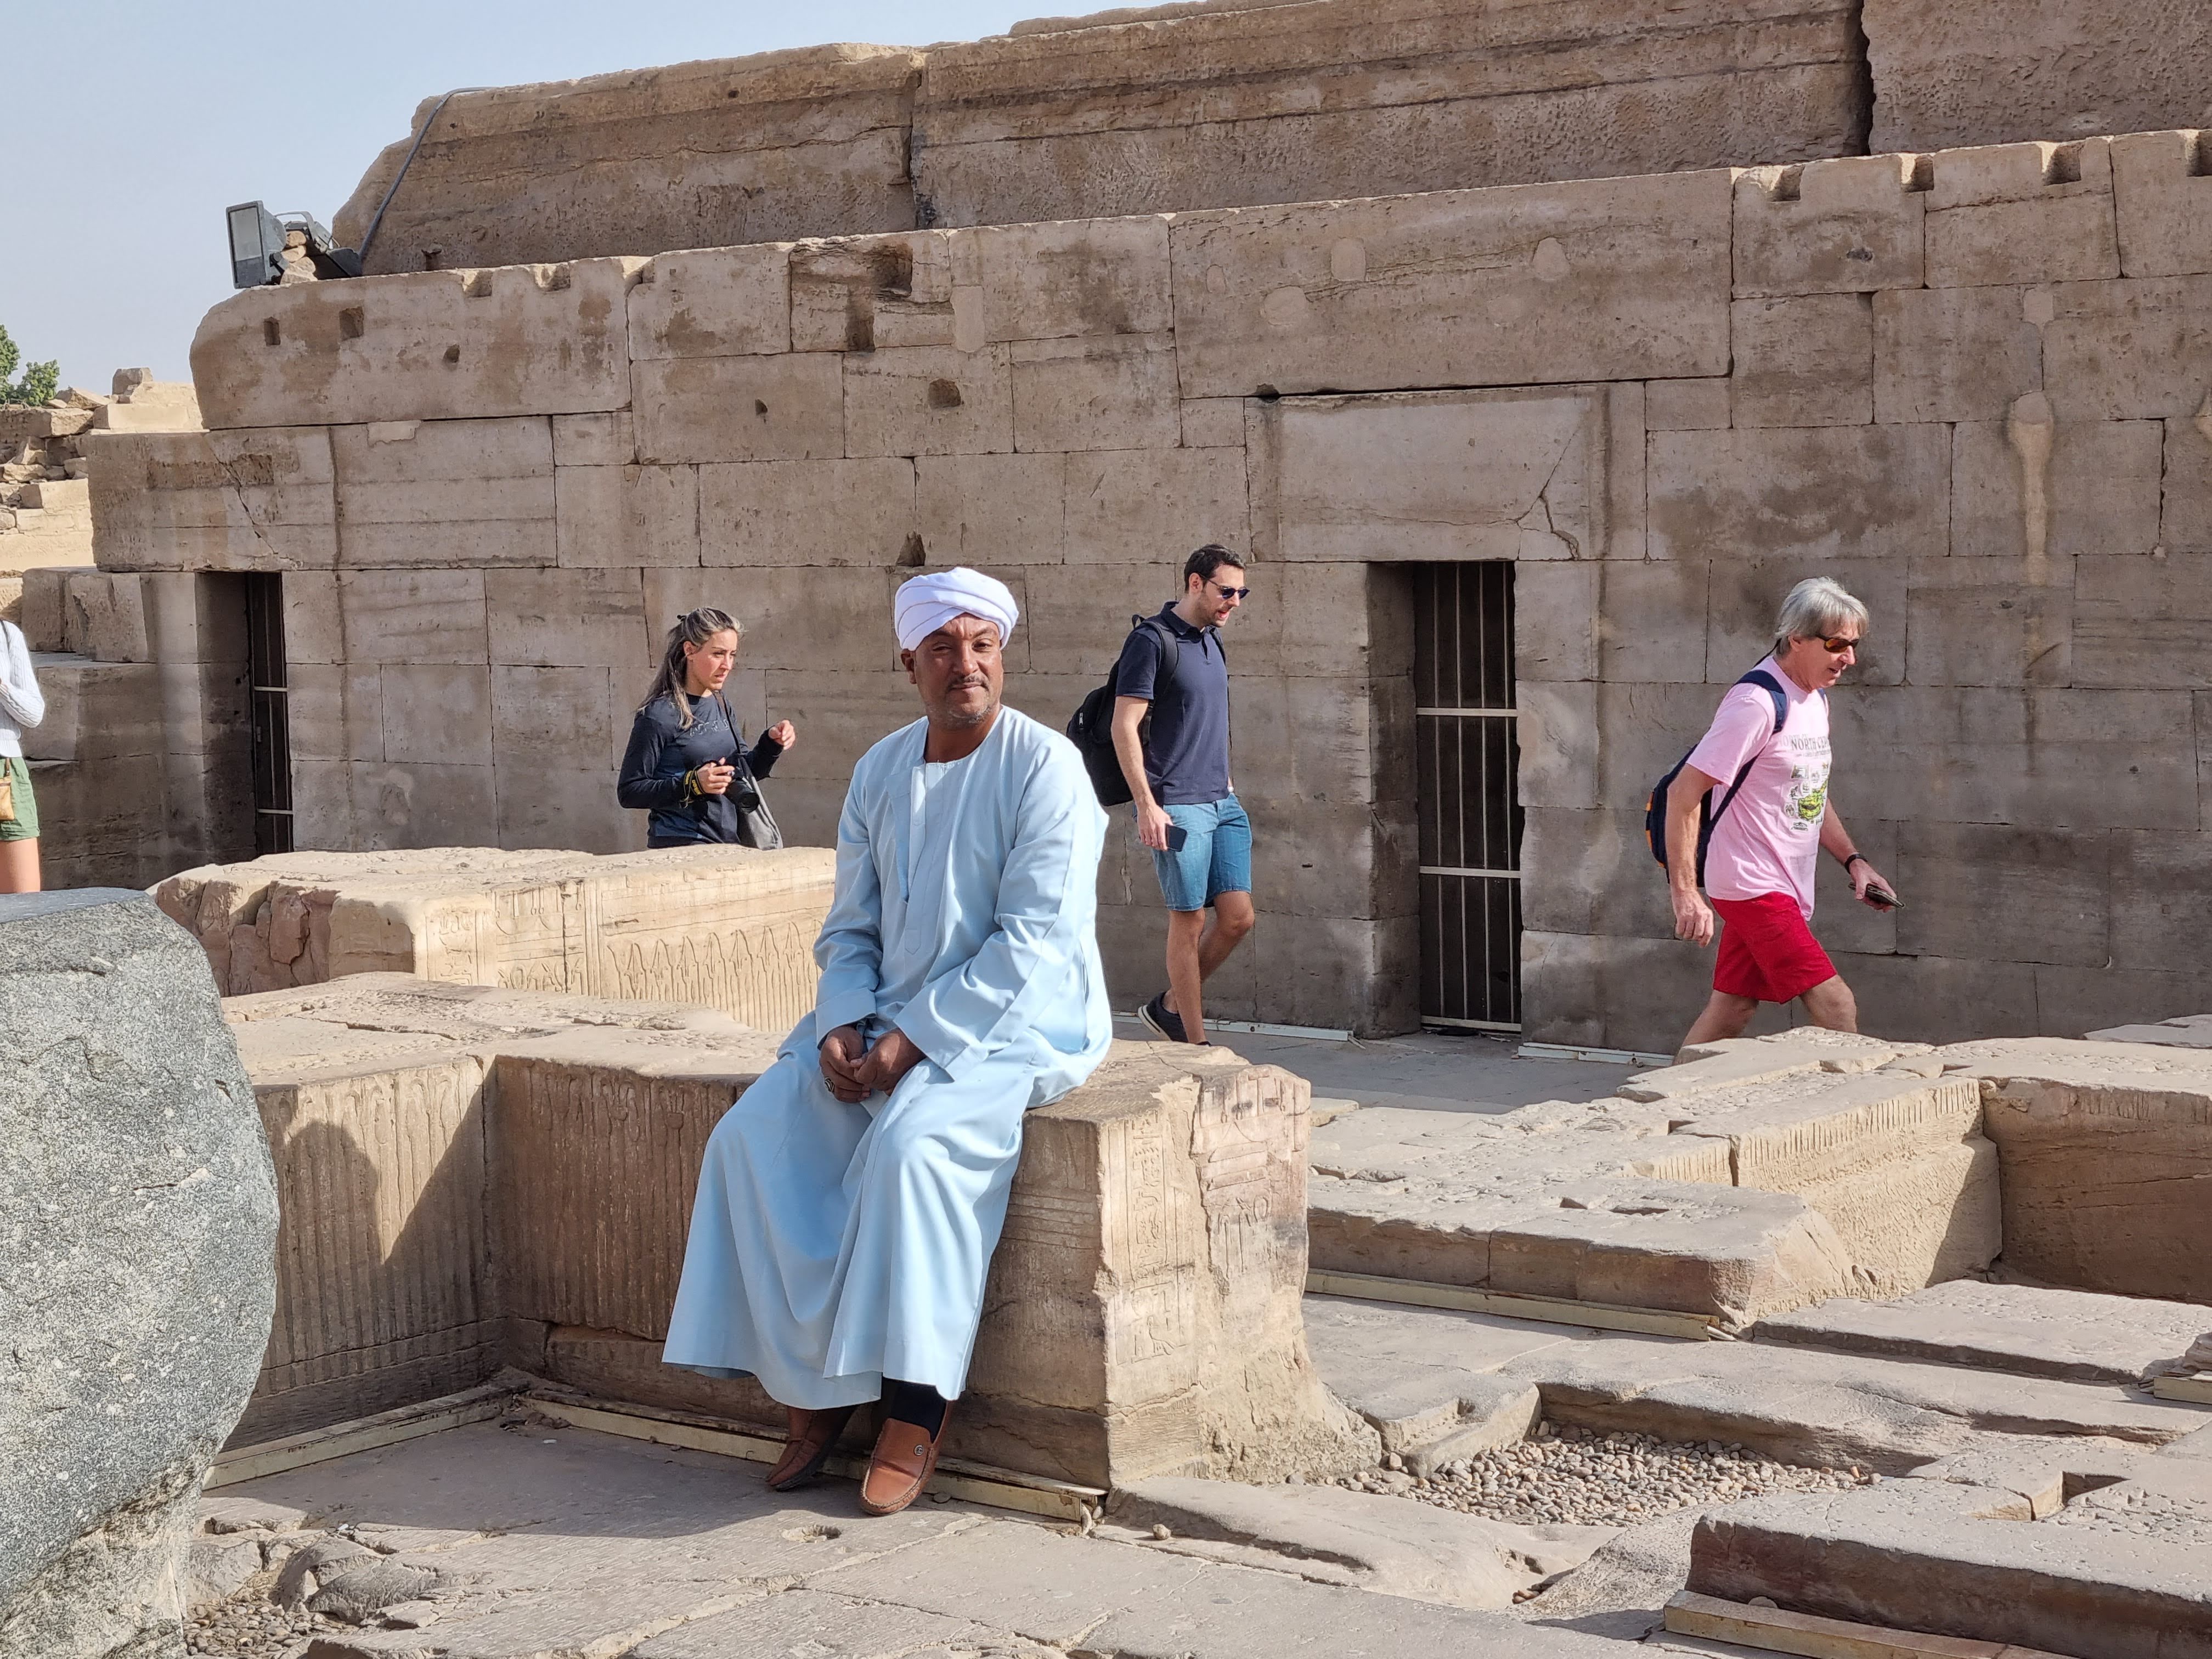 מצרי משועמם צופה בתיירים המבקרים במקדש קום אומבה בעוד הוא מסתפק בתפילה במסגד. אבל המקדשים הפאגניים הללו , מה לעשות , מביאים פרנסה לכפר הסמוך